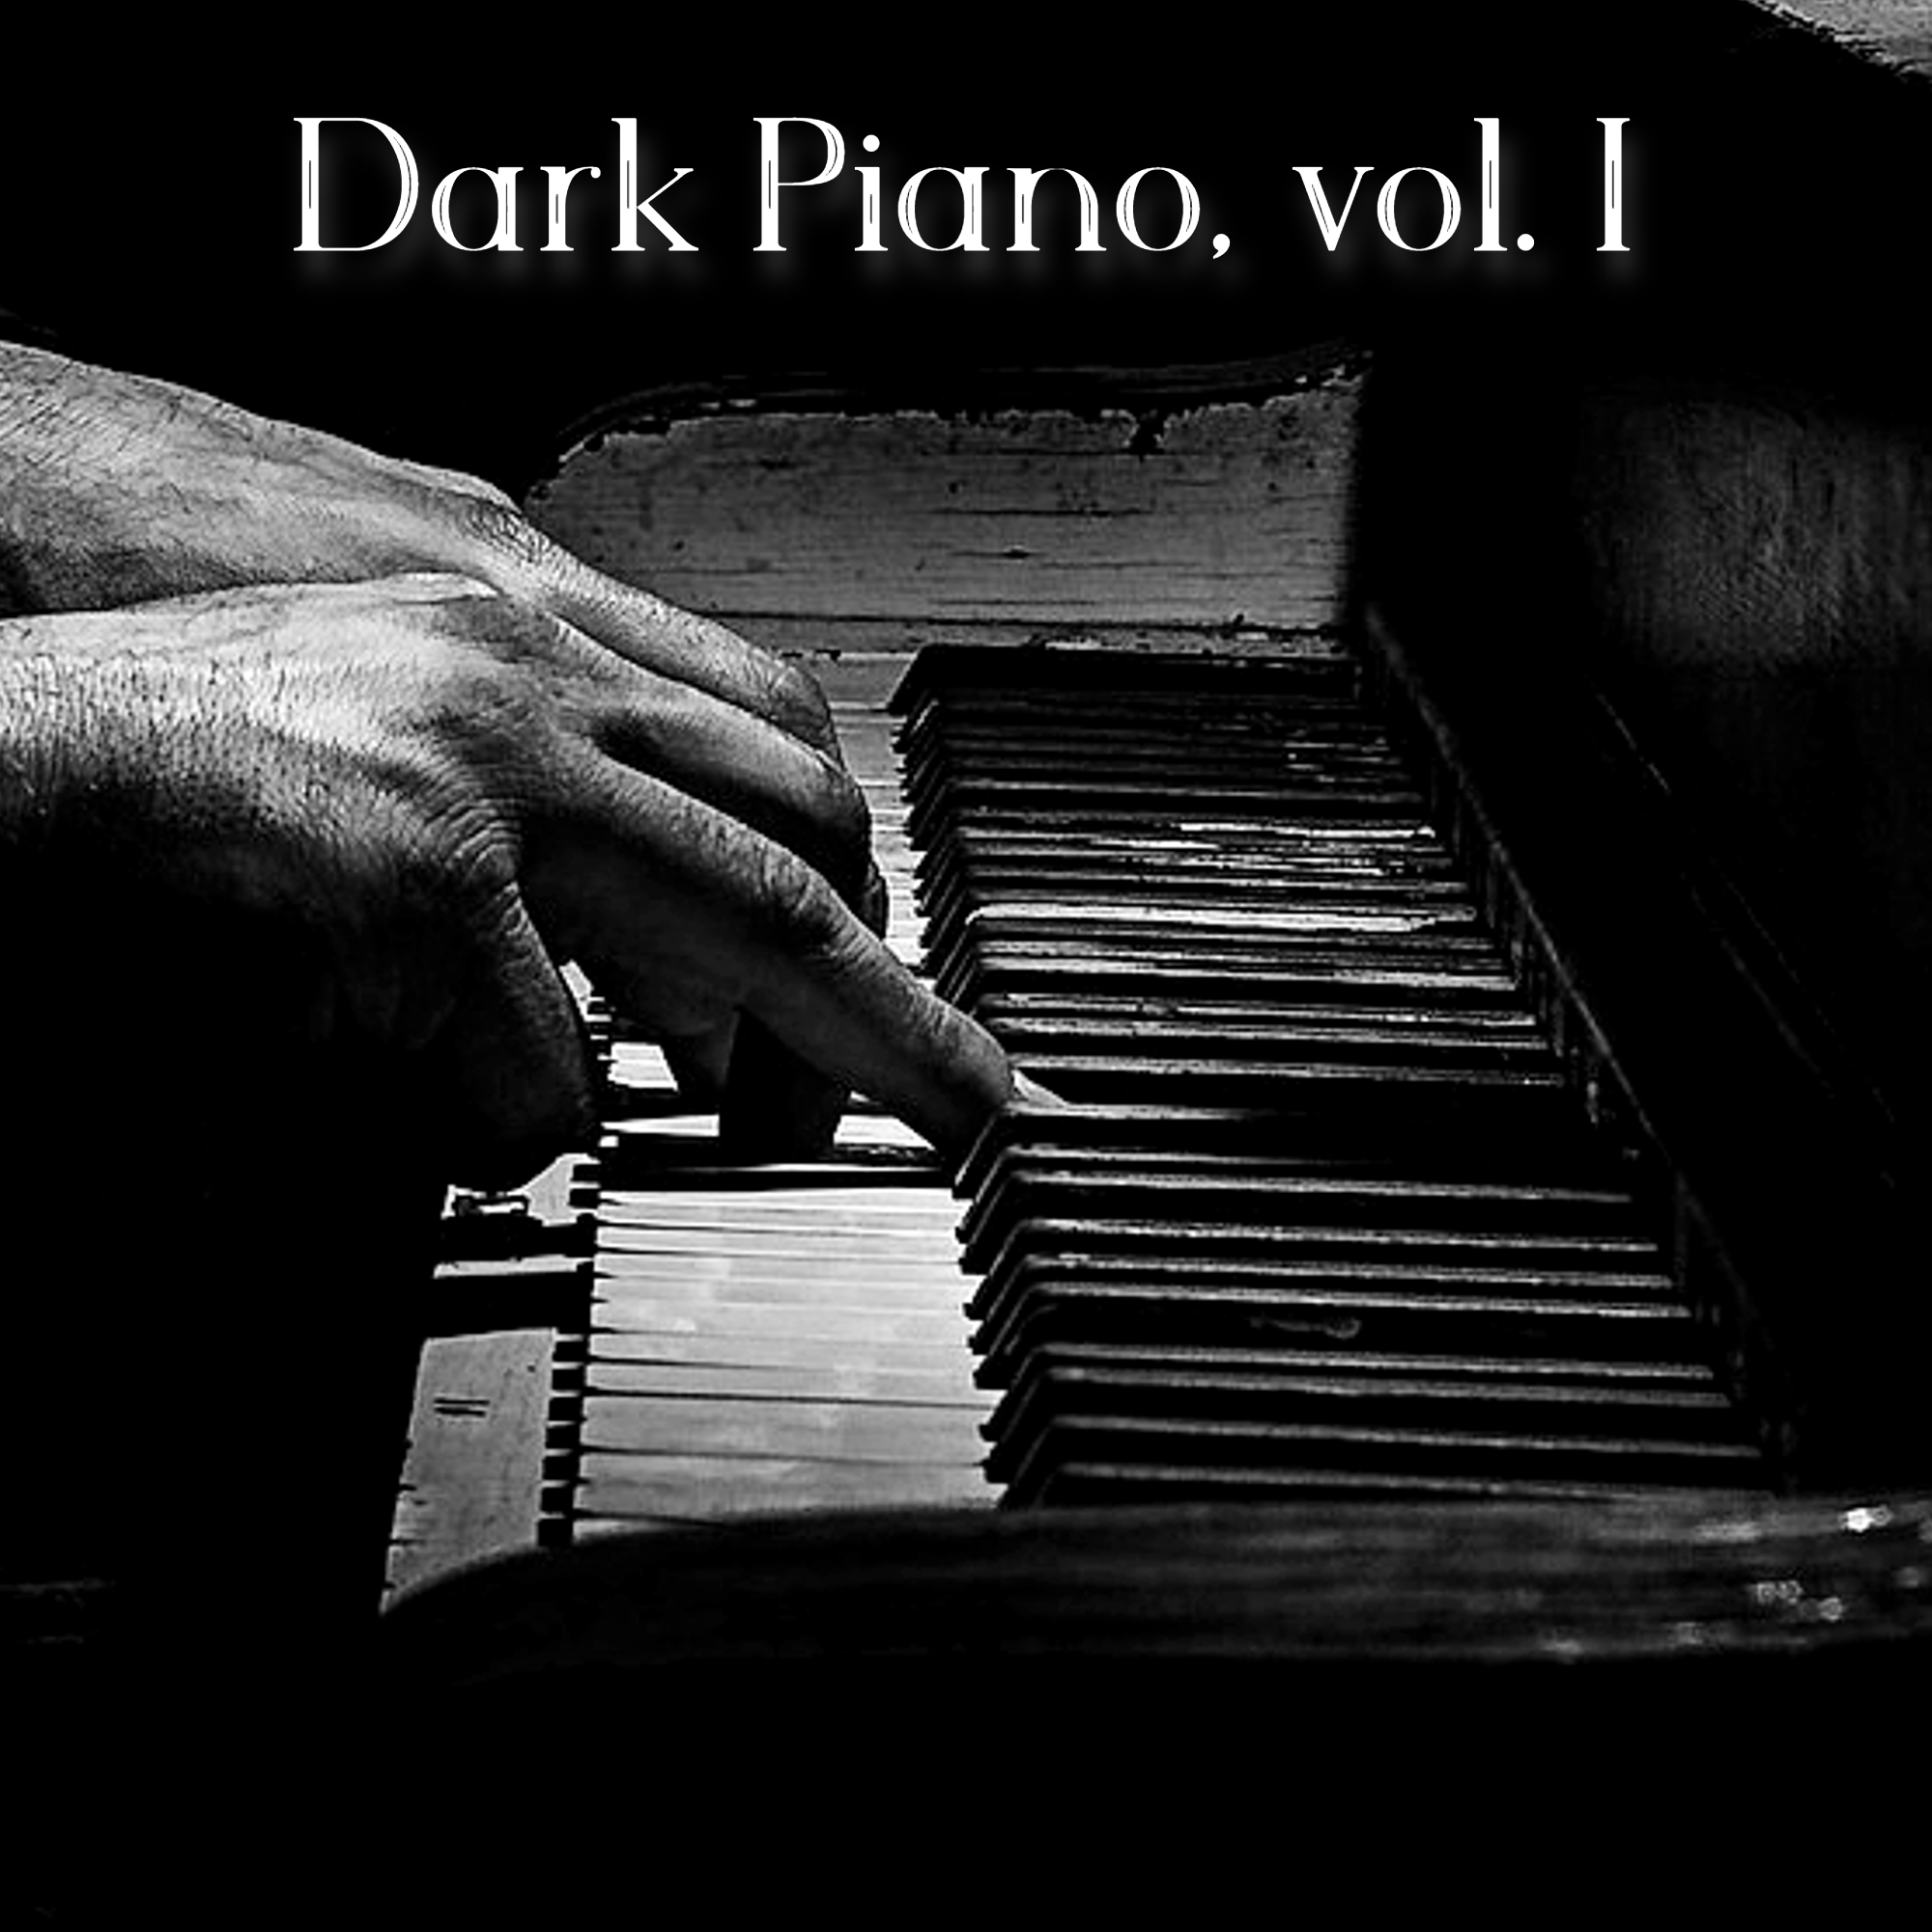 Dark Piano, vol. I